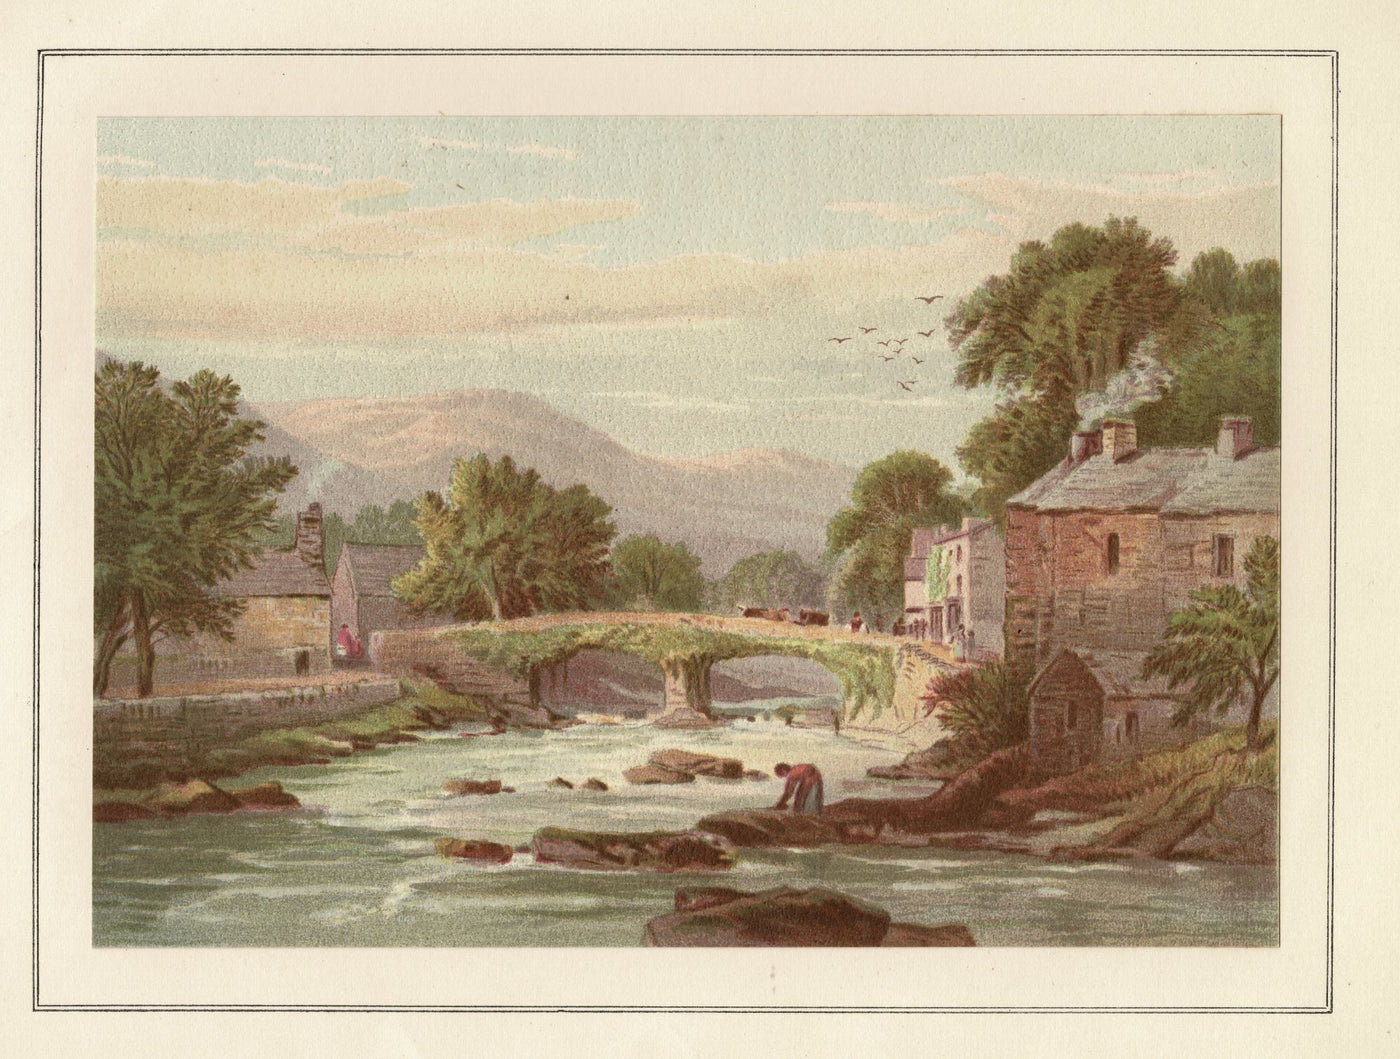 Beddergelert Snowdonia Wales antique print 1879